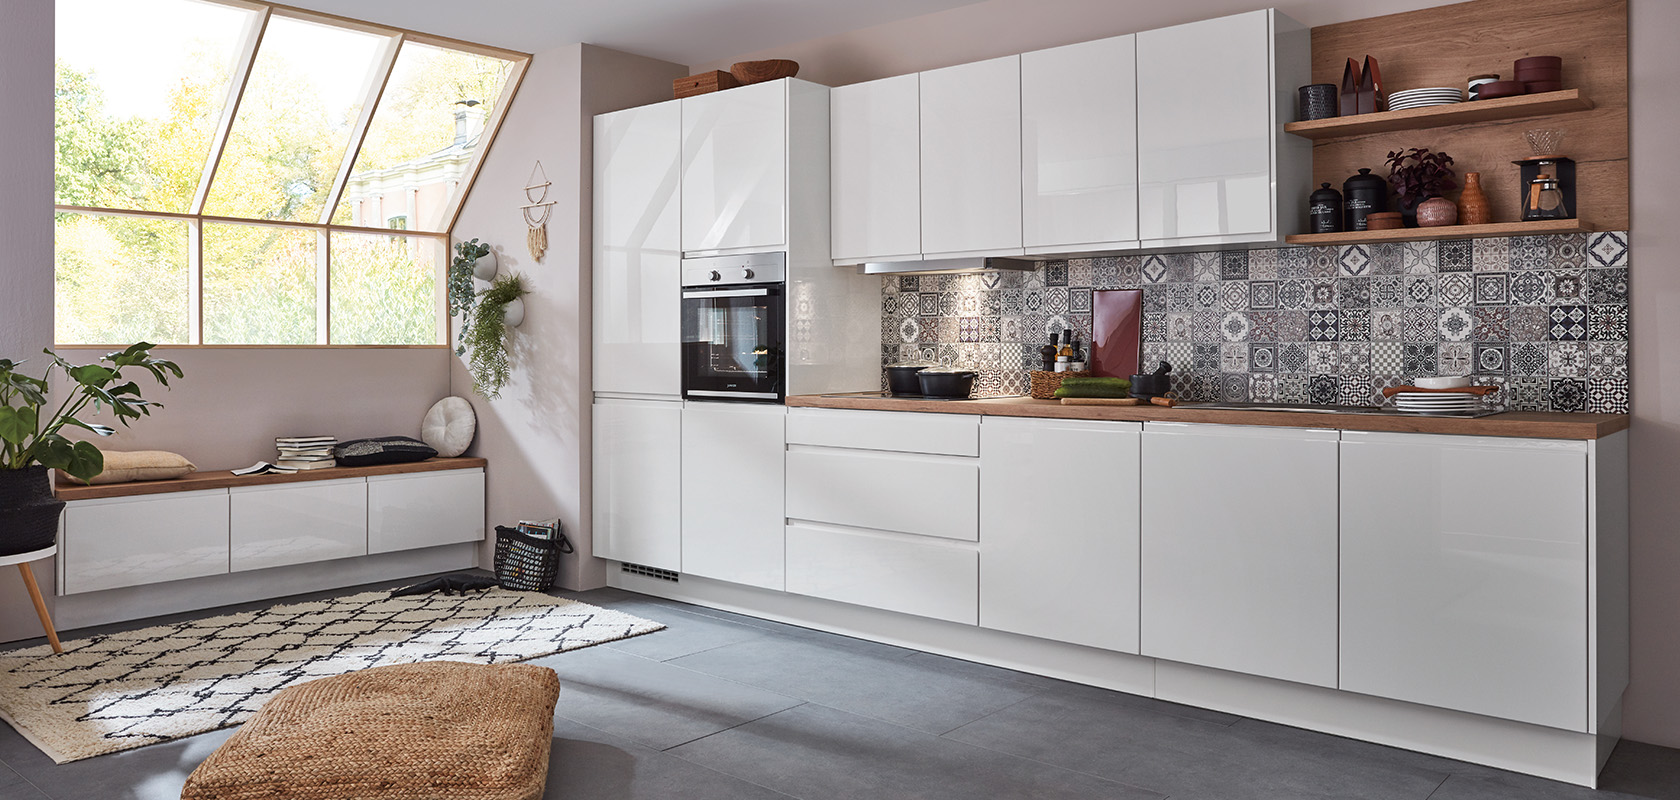 Intérieur de cuisine moderne avec des armoires blanches propres, des carreaux de dosseret géométriques et des détails en bois, créant un espace de vie et de cuisine confortable et élégant.